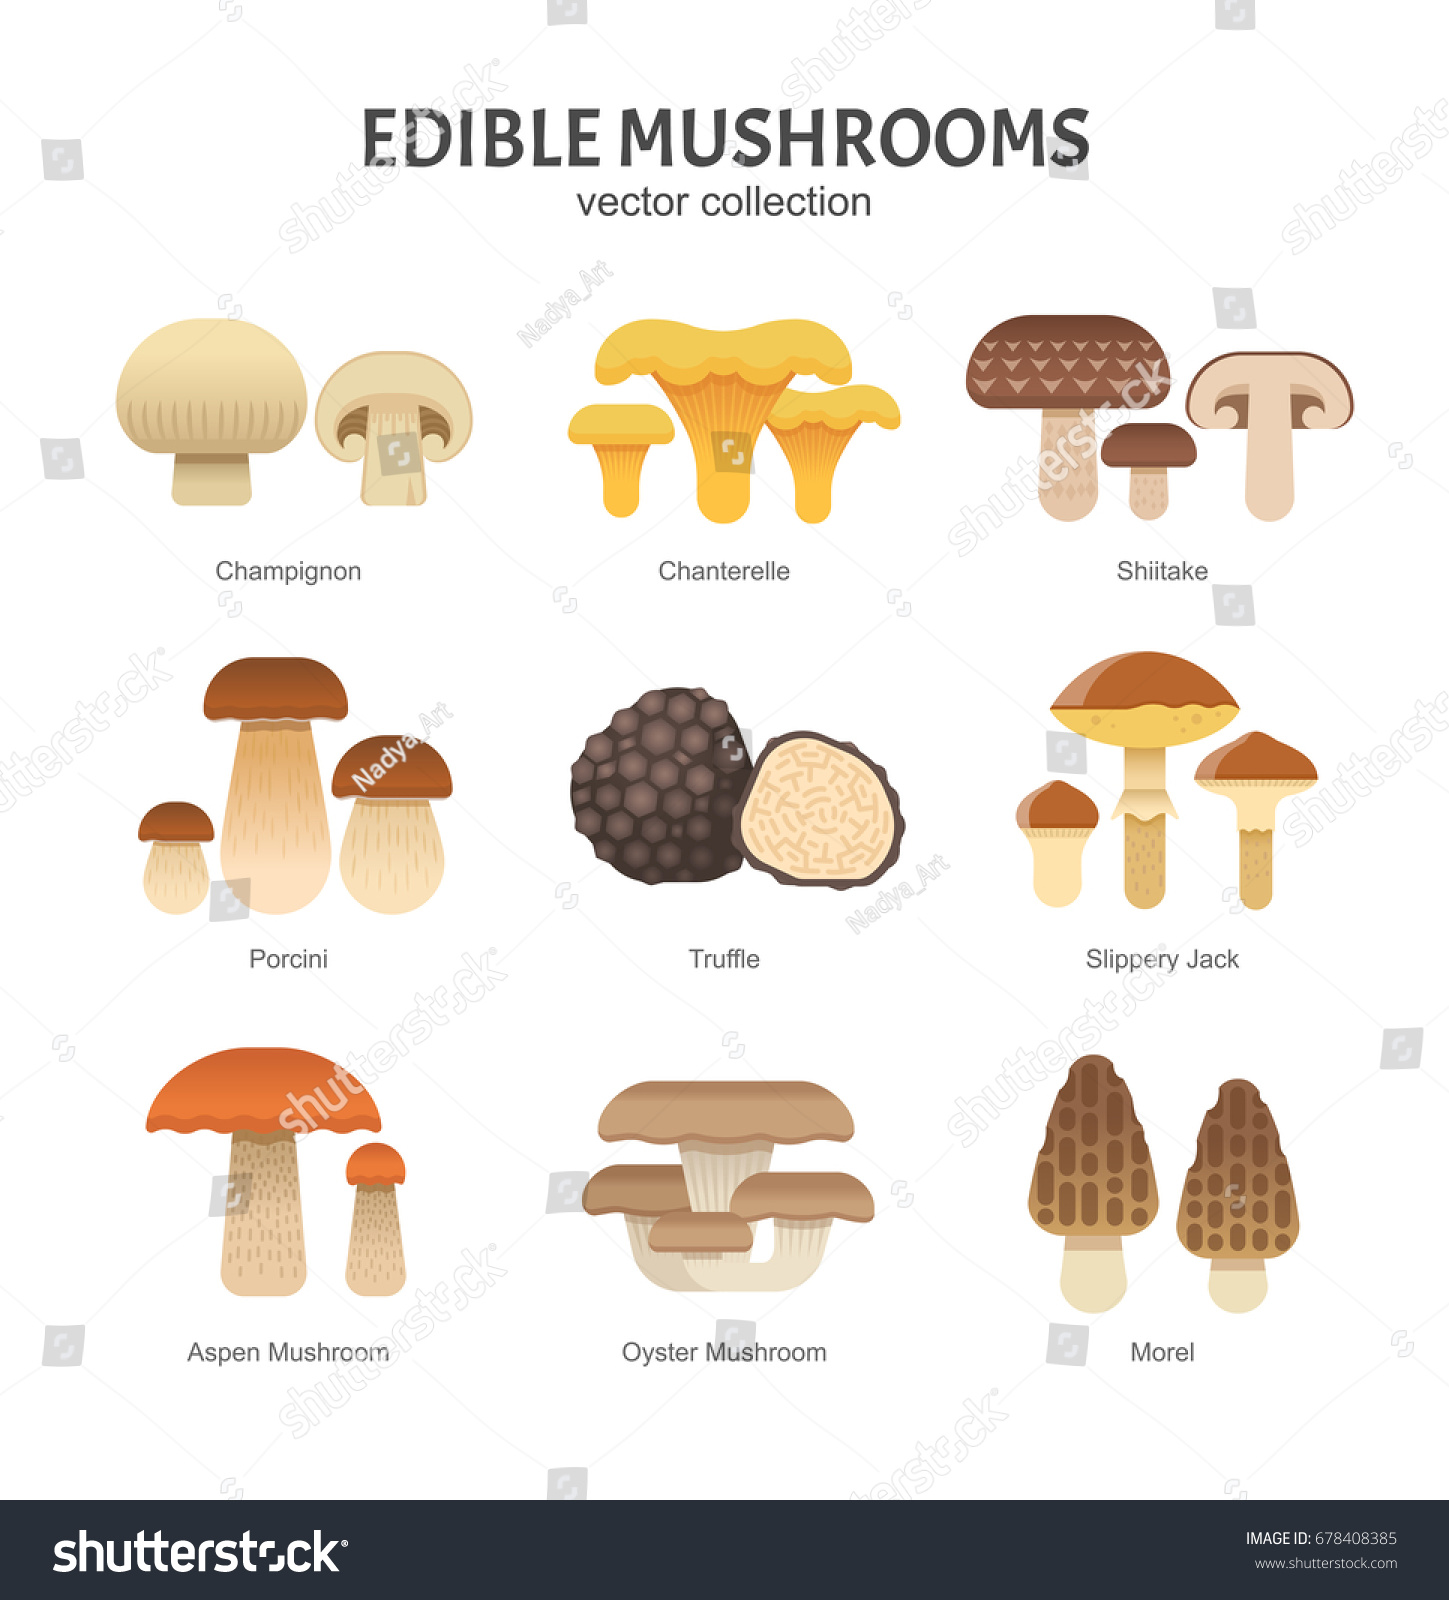 Виды грибов на английском